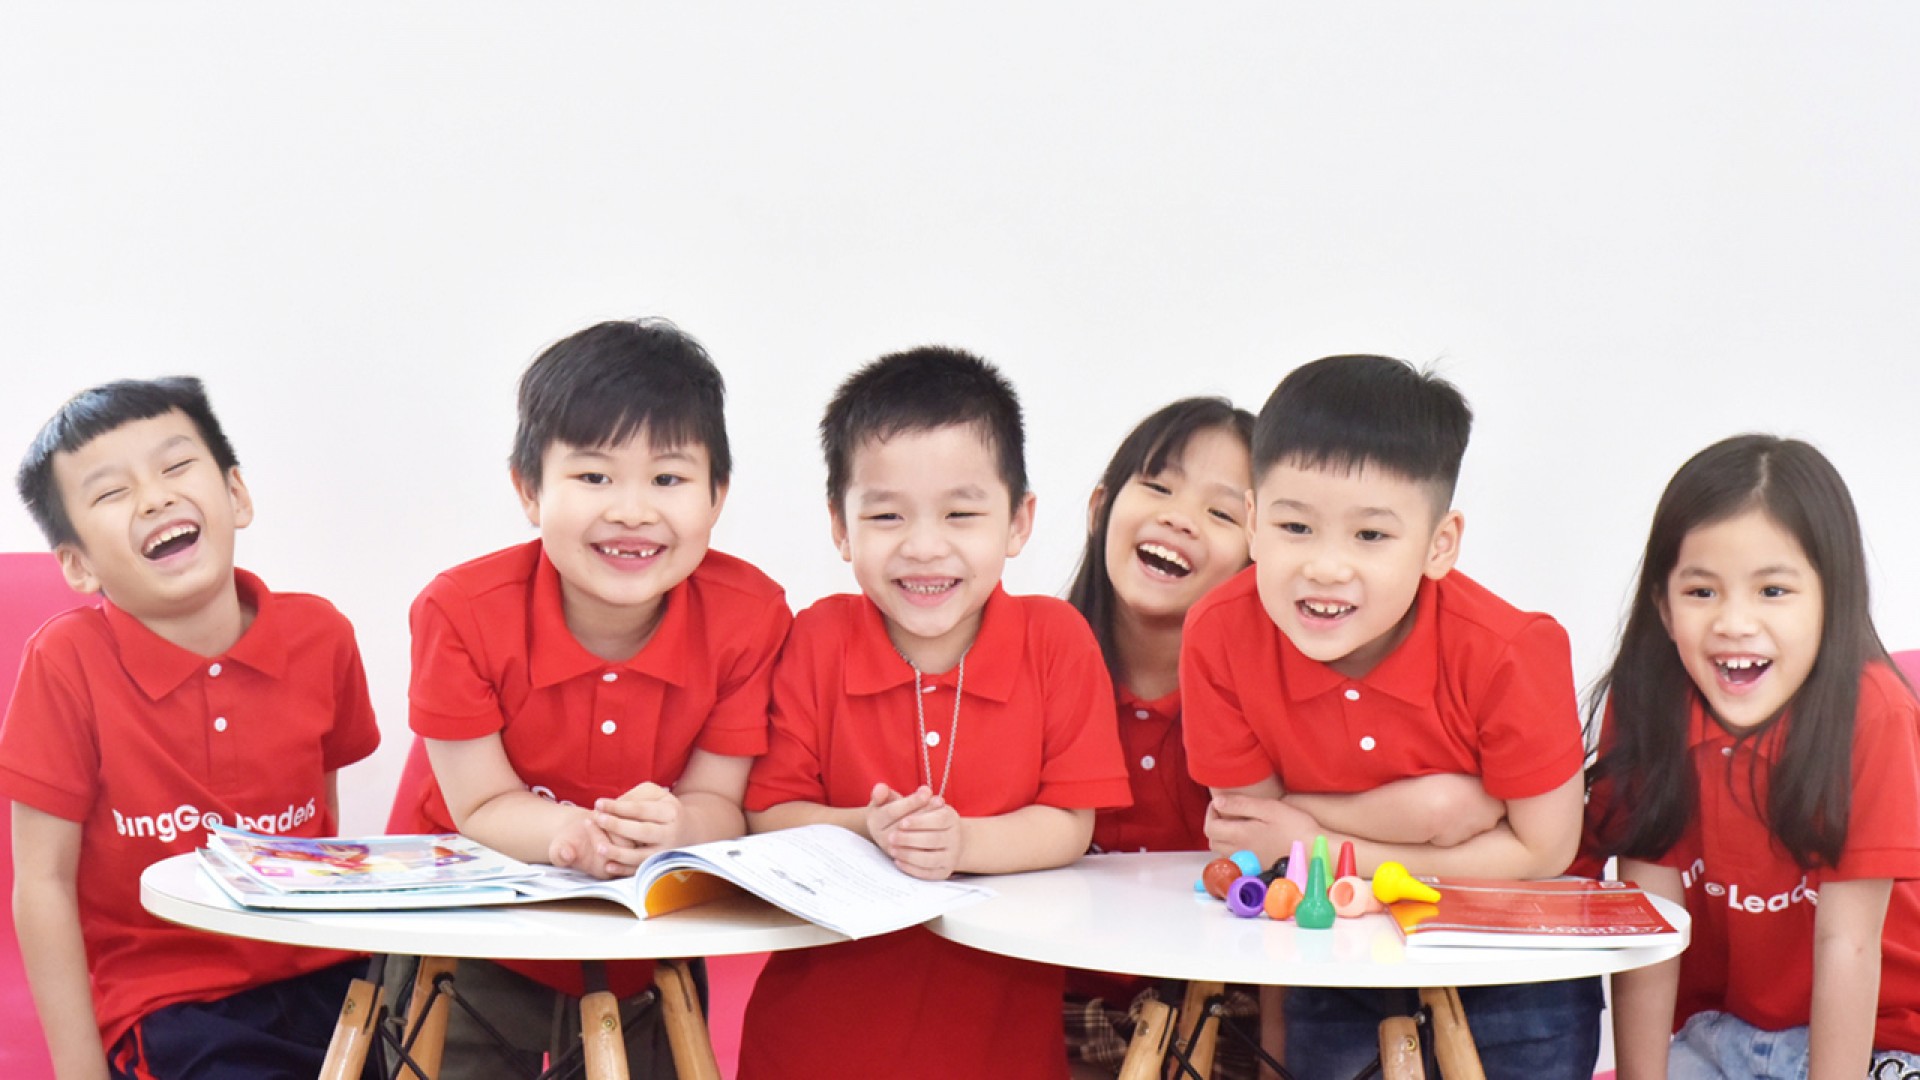 Khóa học tiếng Anh cho trẻ 4 - 6 tuổi tại BingGo Leaders có gì nổi bật thu hút phụ huynh?